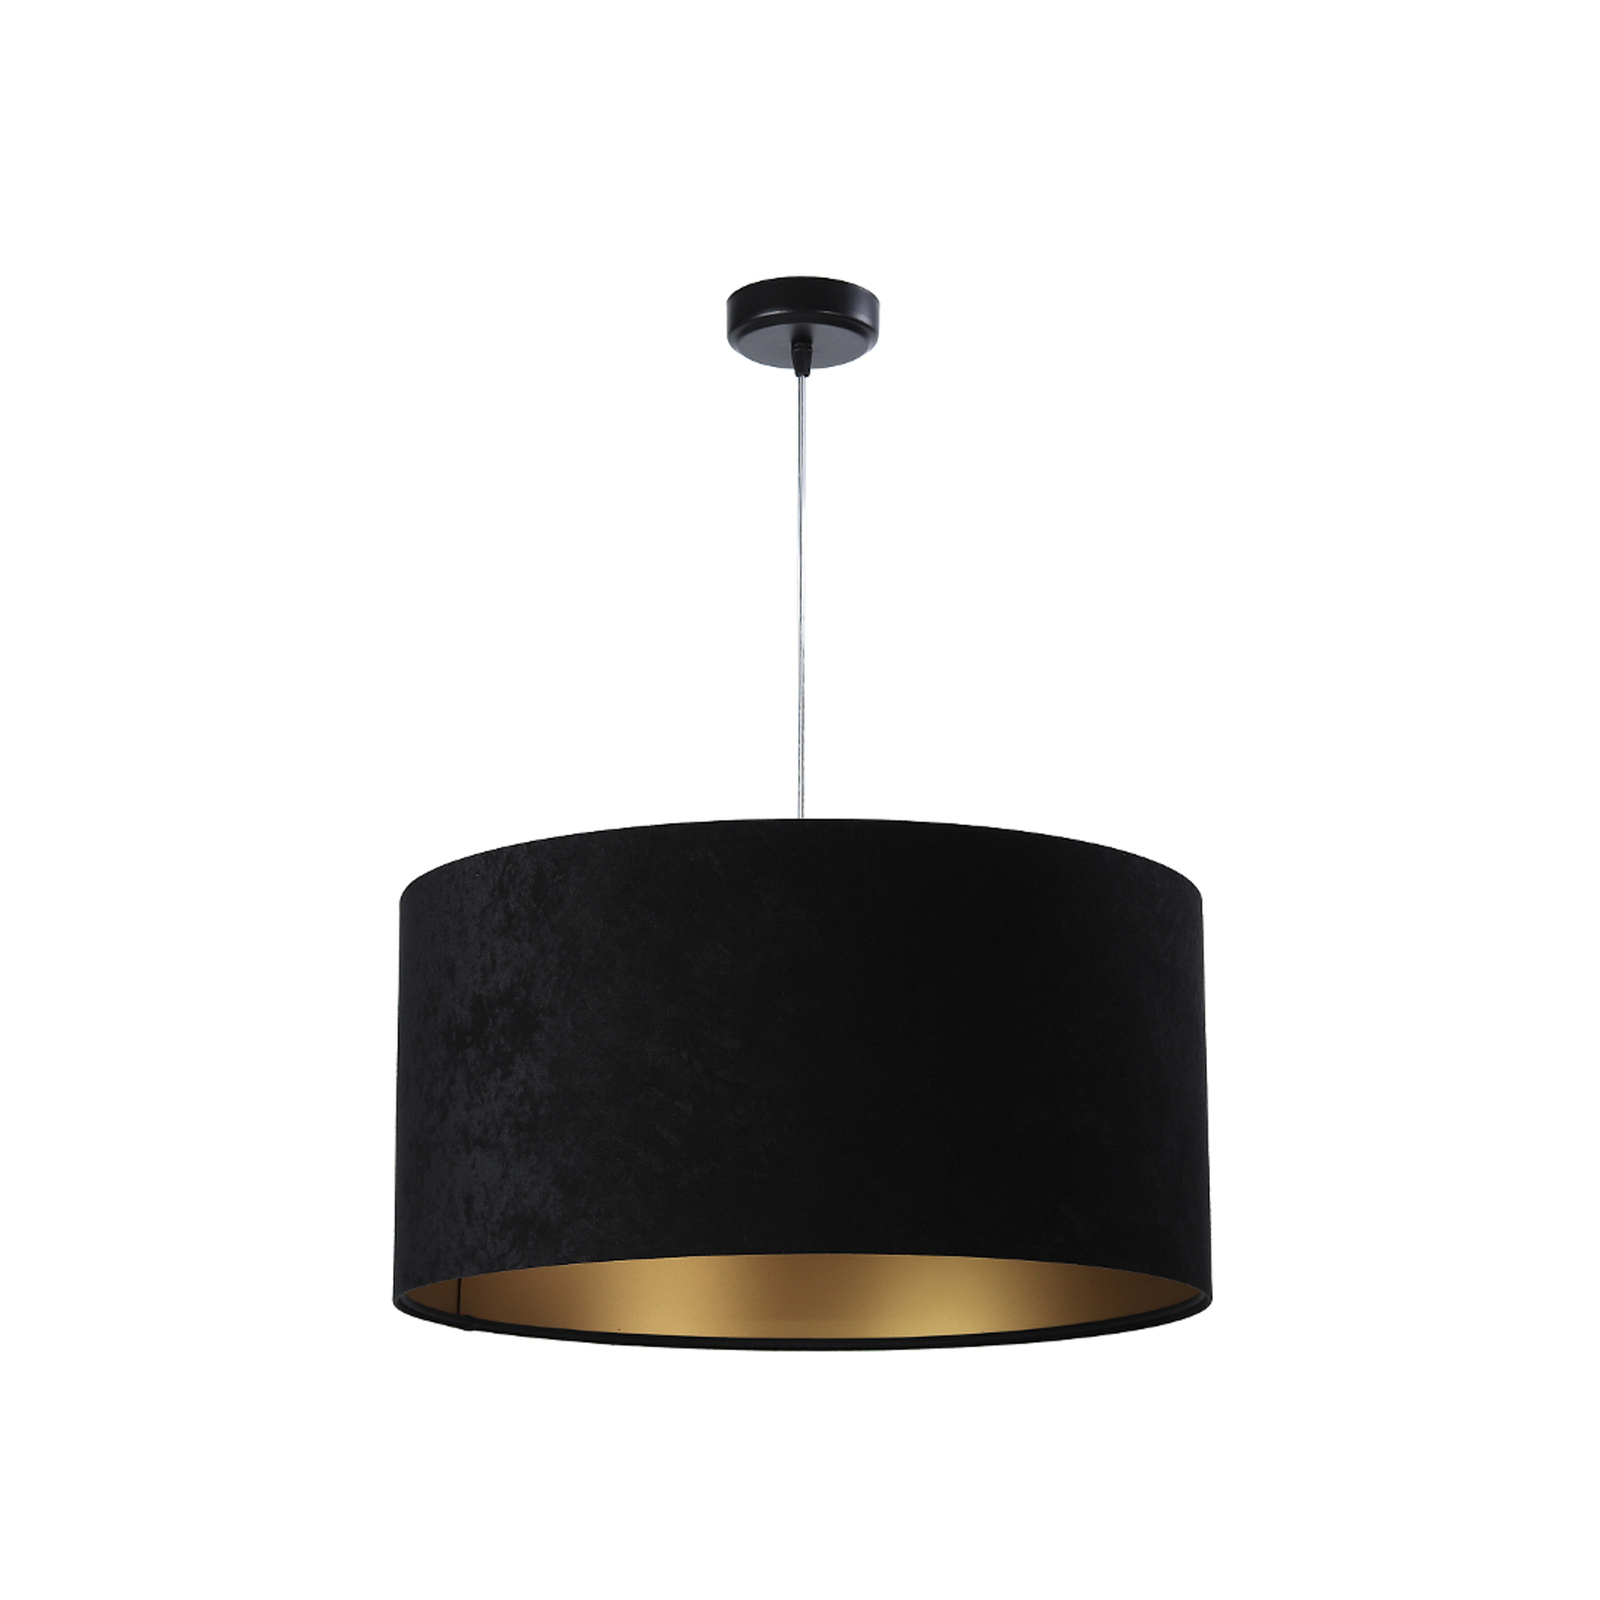 Salina hanglamp, zwart/goud, Ø 40cm